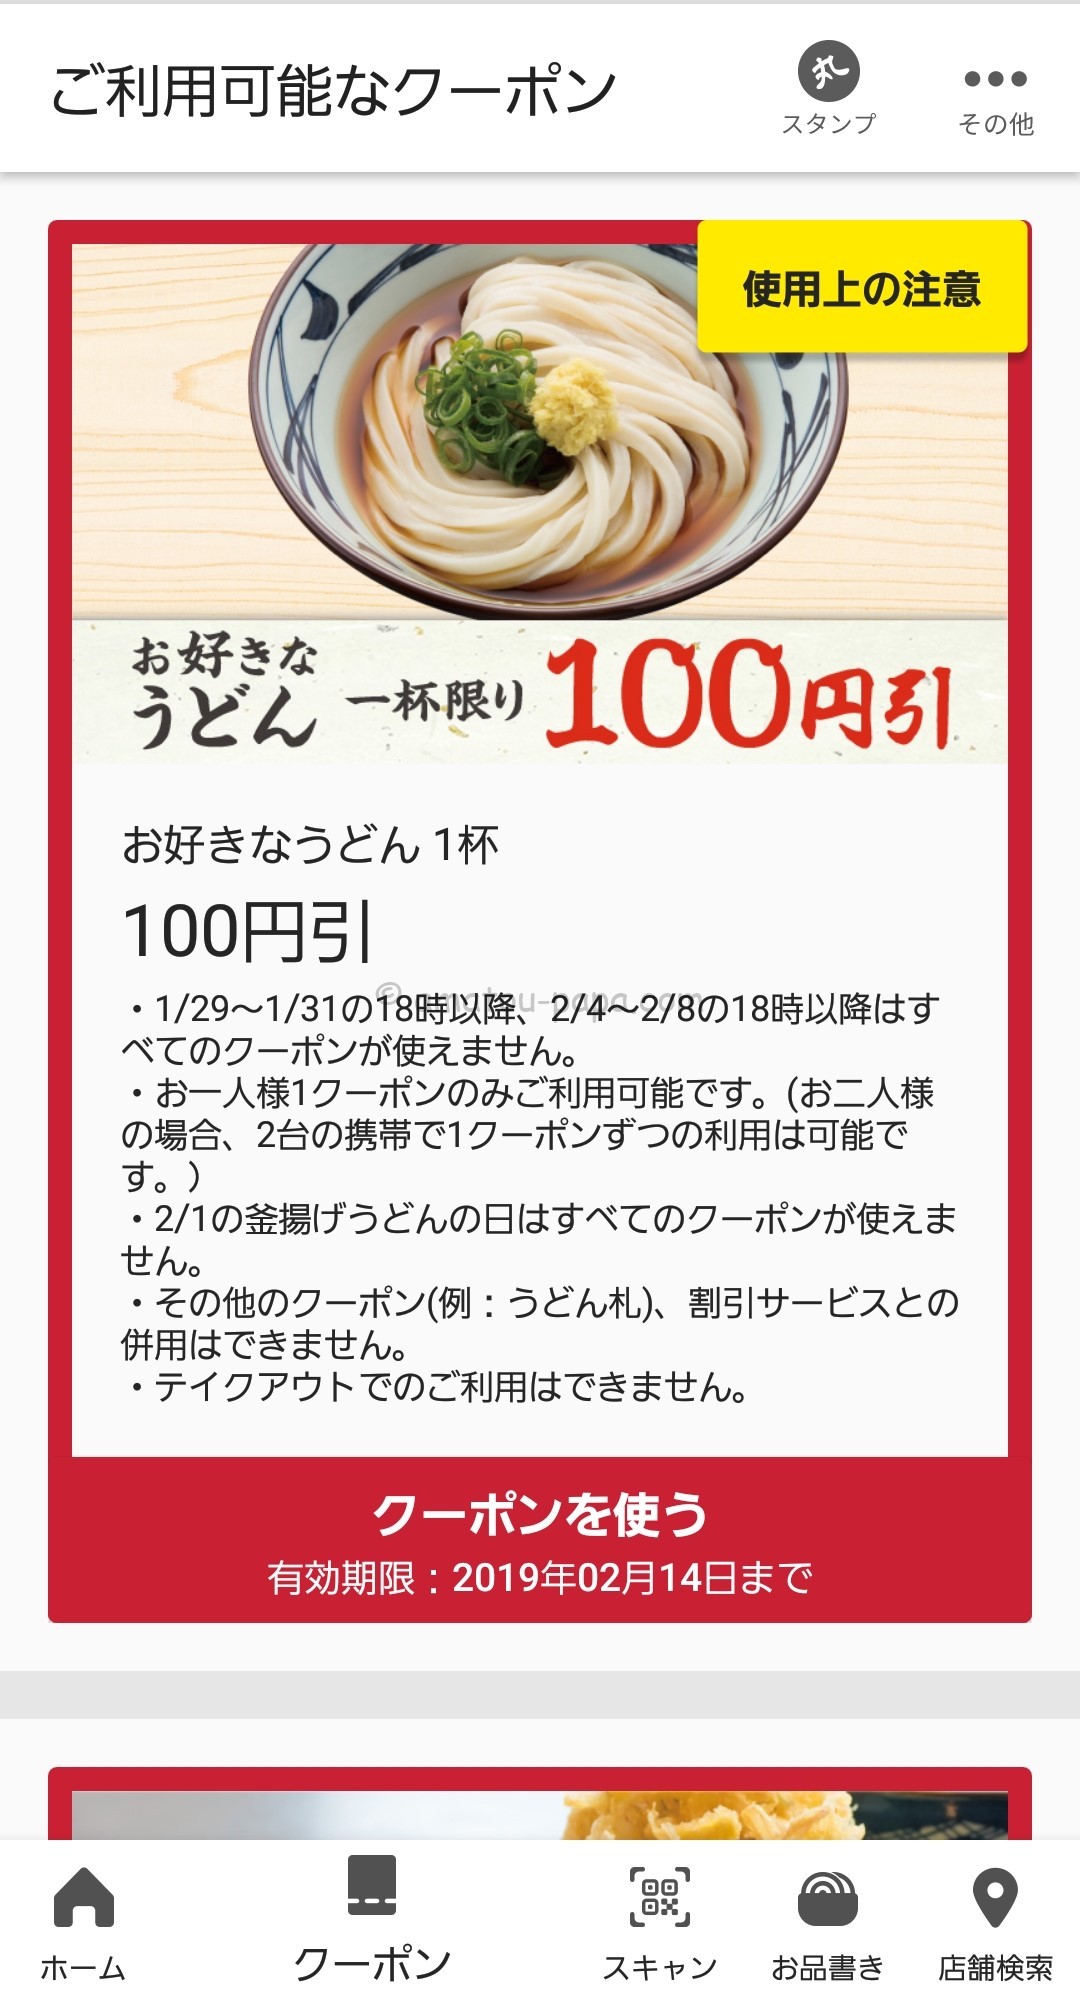 丸亀製麺を割引クーポン アプリ 優待で半額または無料にする方法